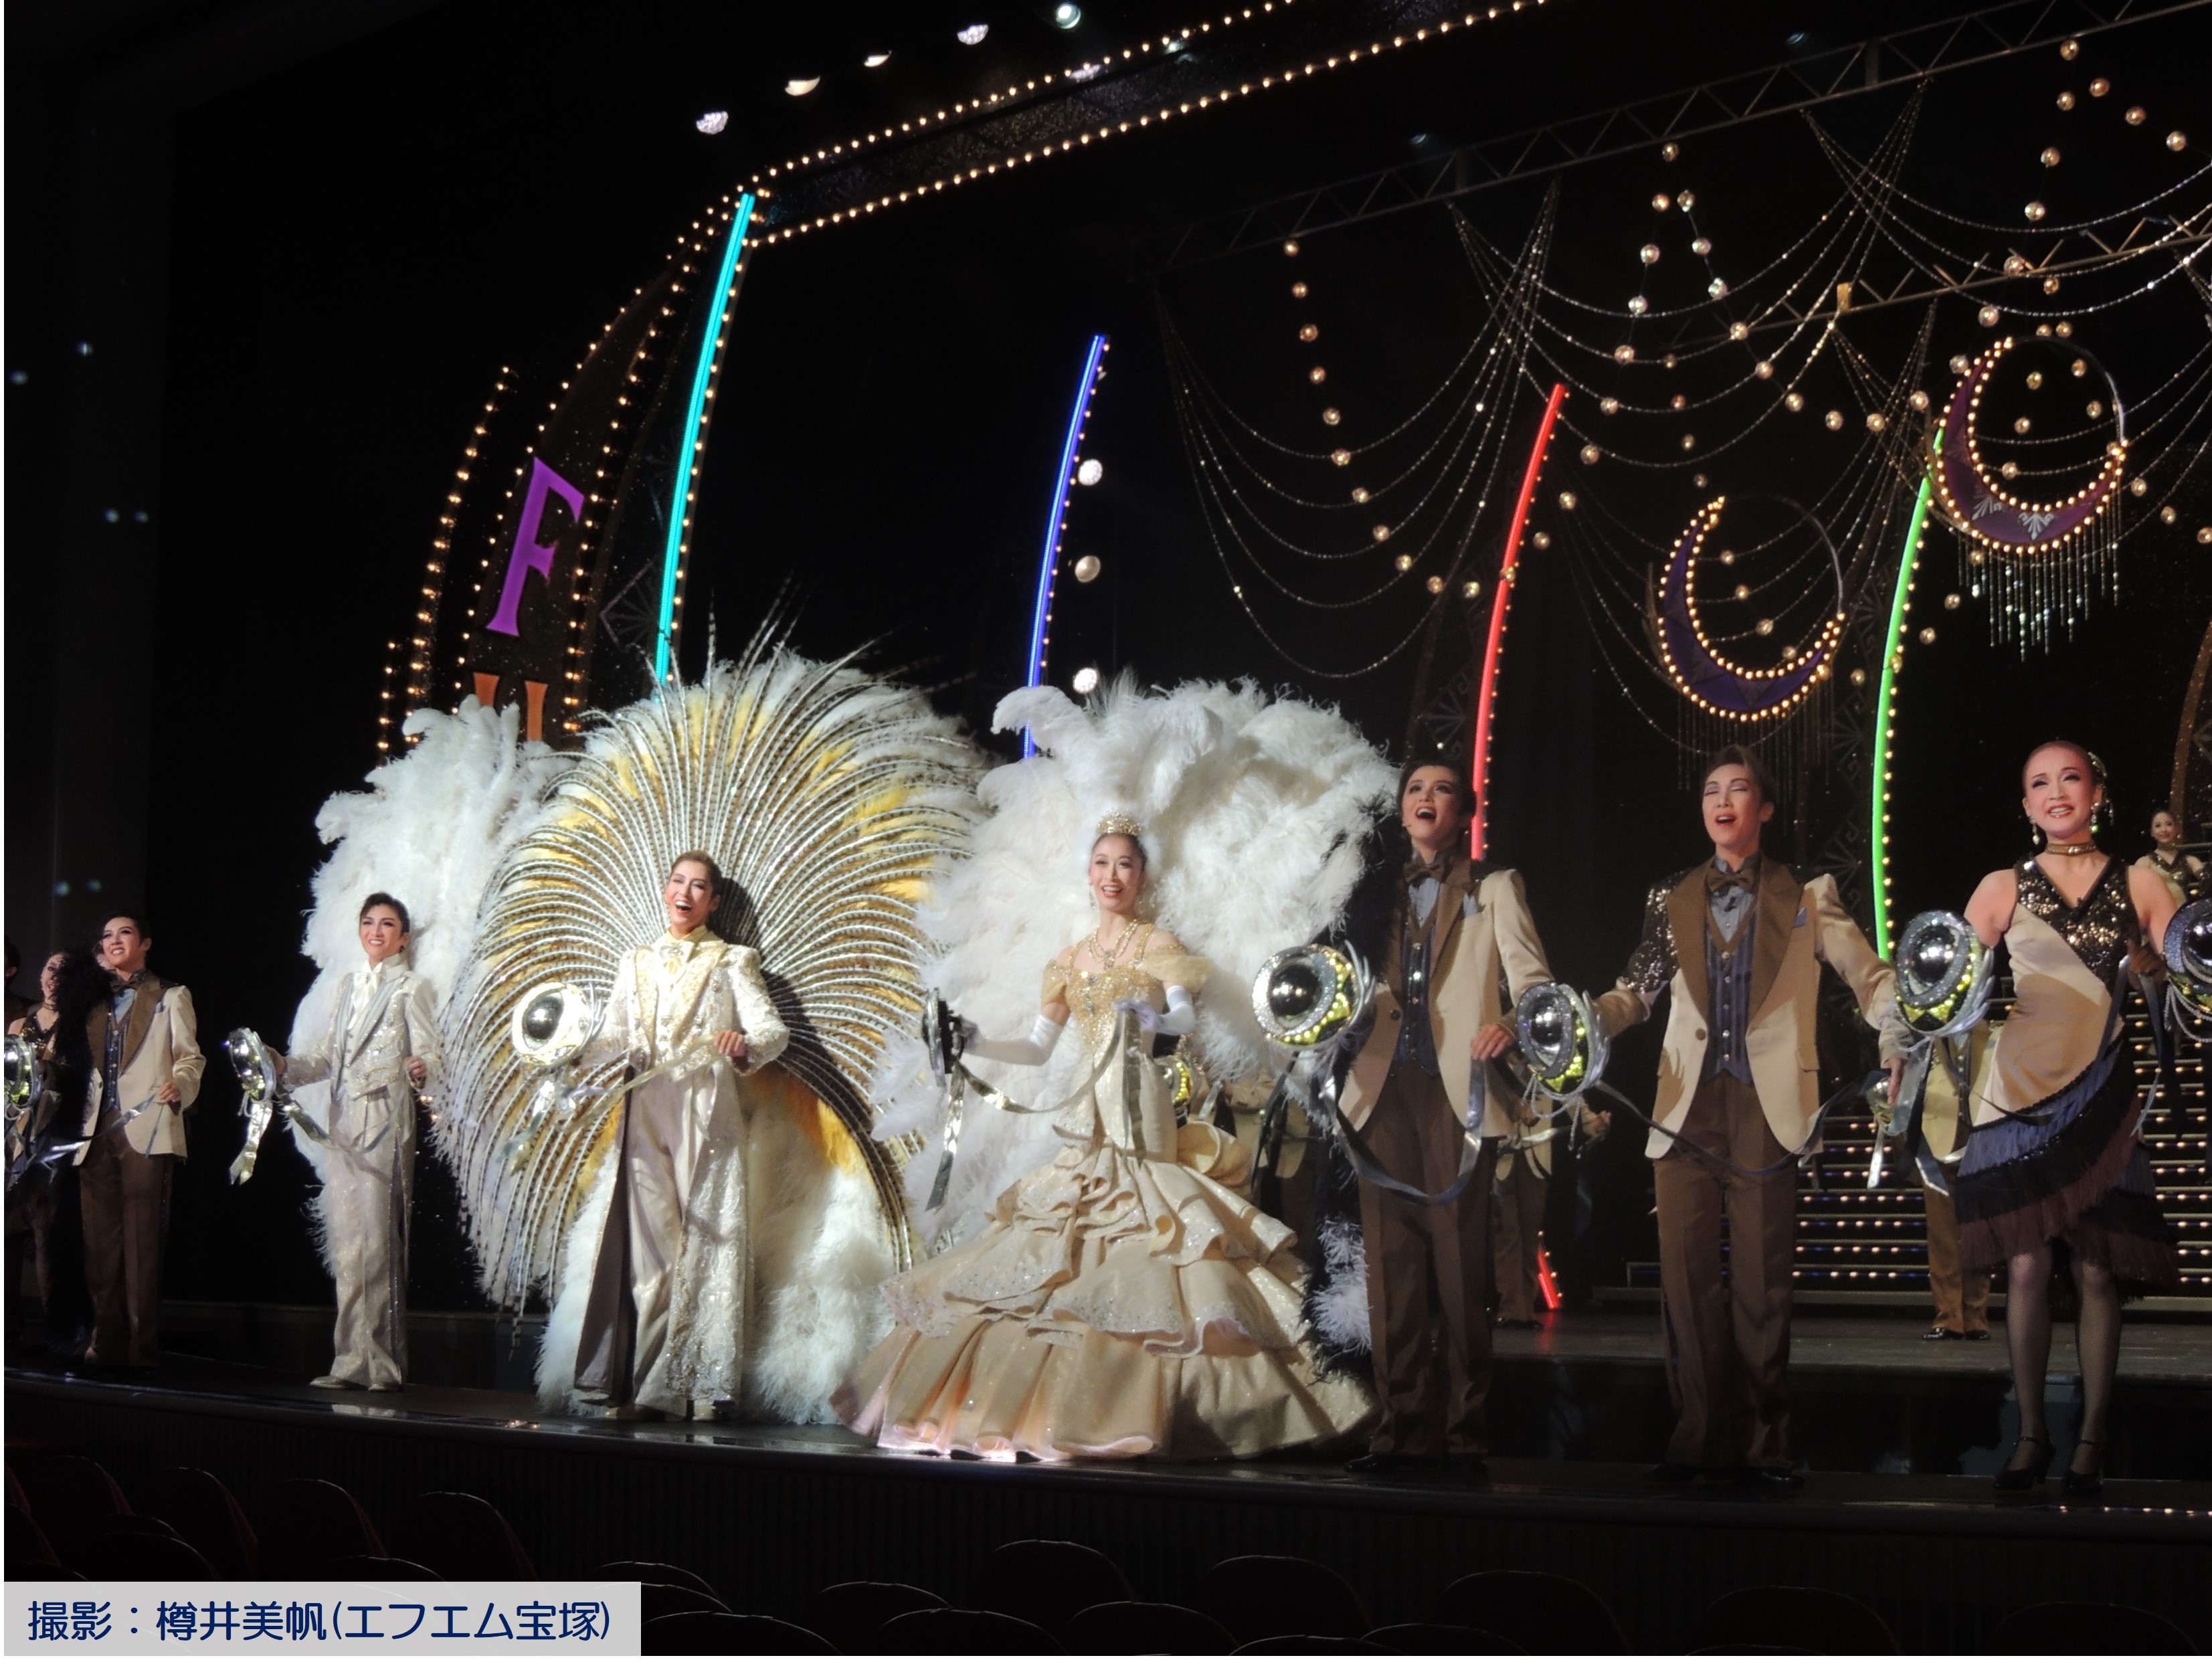 宝塚大劇場月組公演『今夜、ロマンス劇場で』・『FULL SWING 